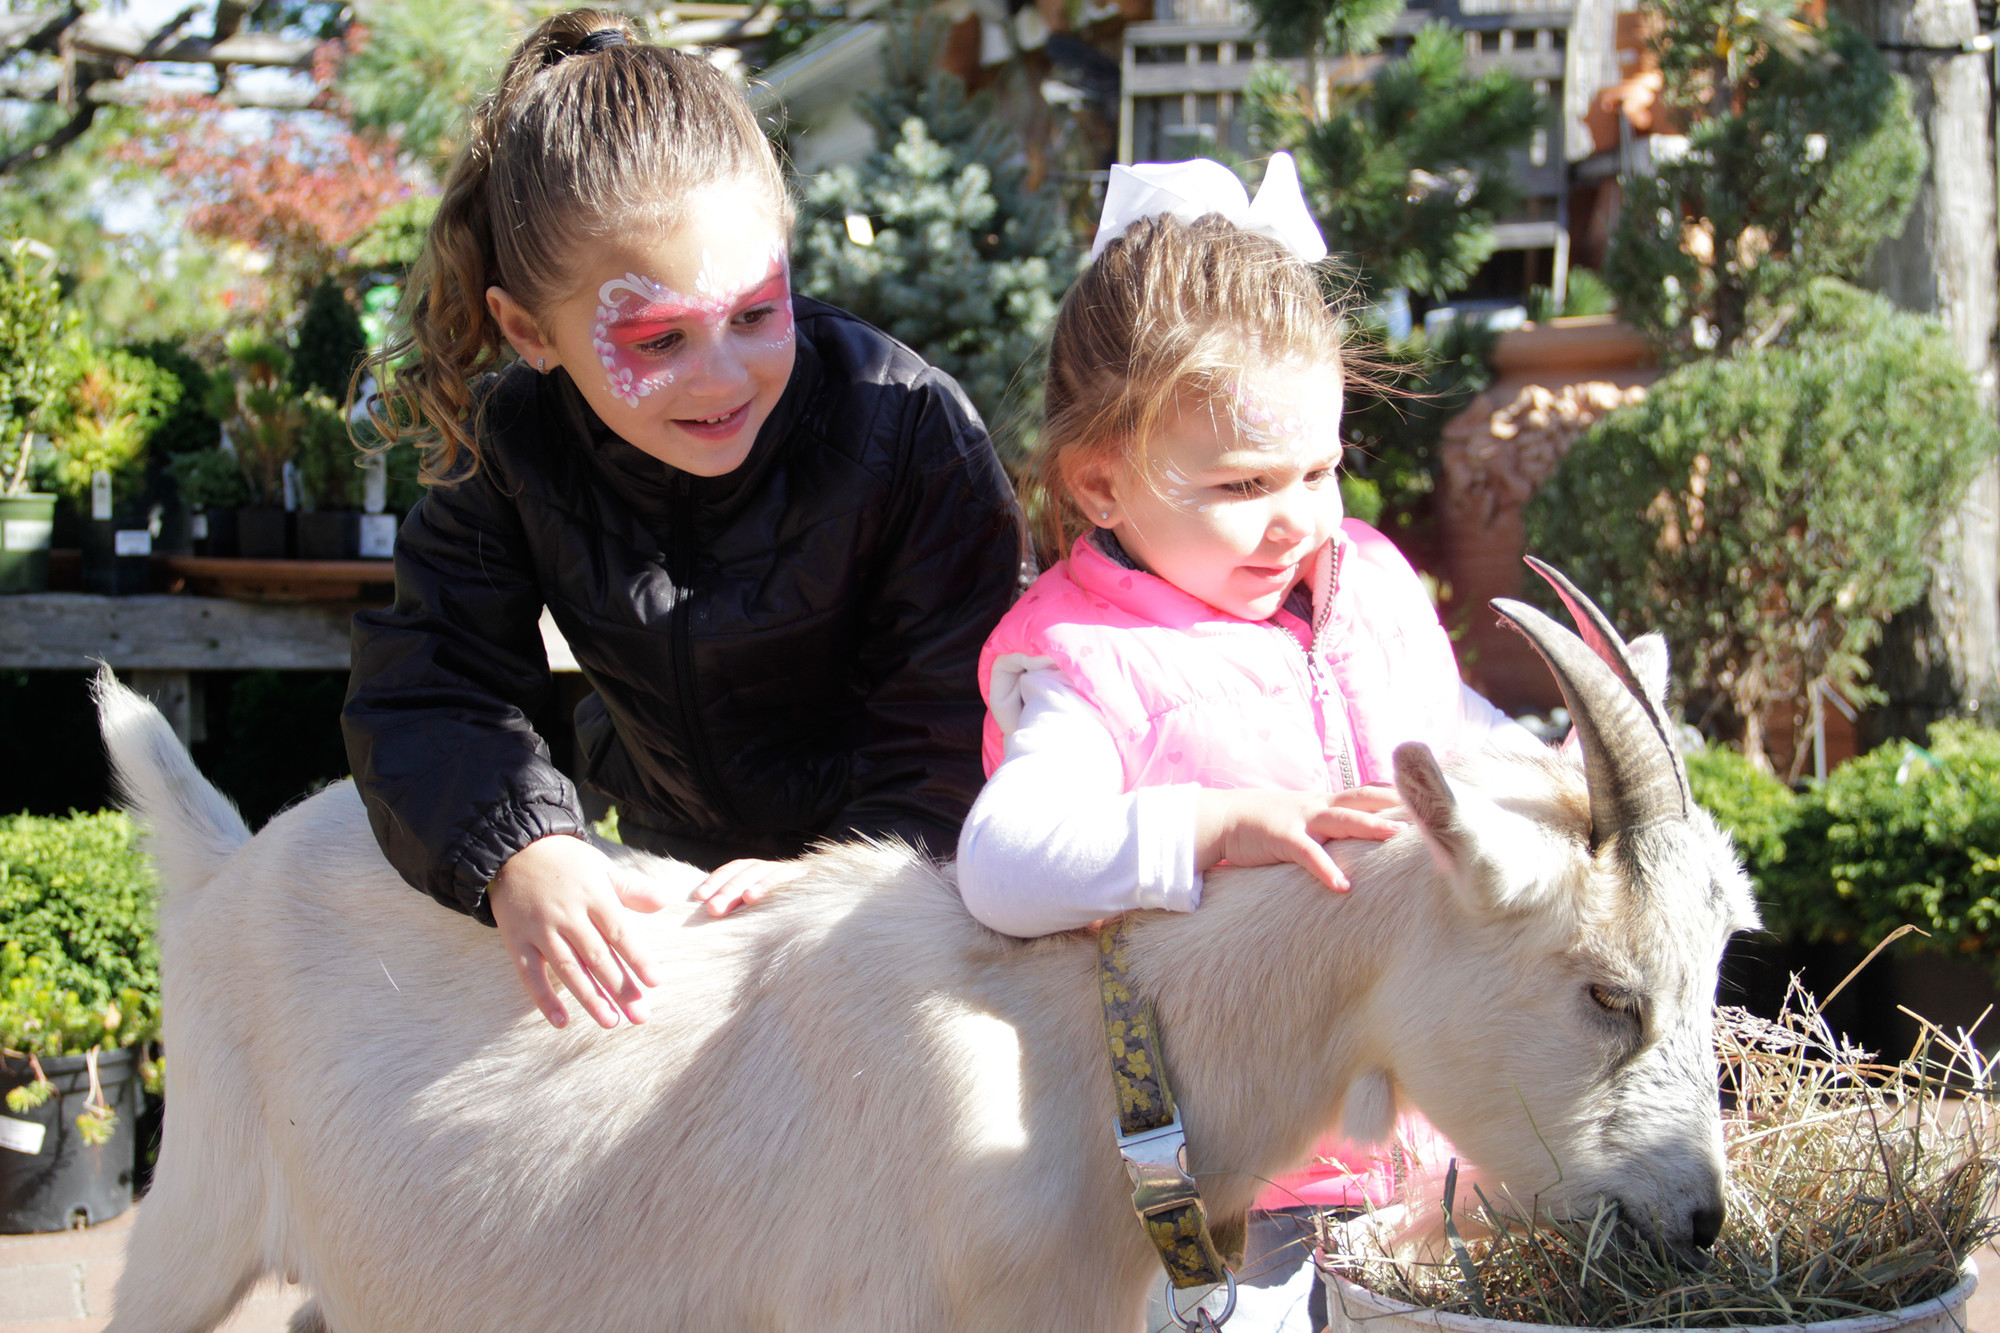 Ella and Mia Balbo had fun petting Rosie the goat.